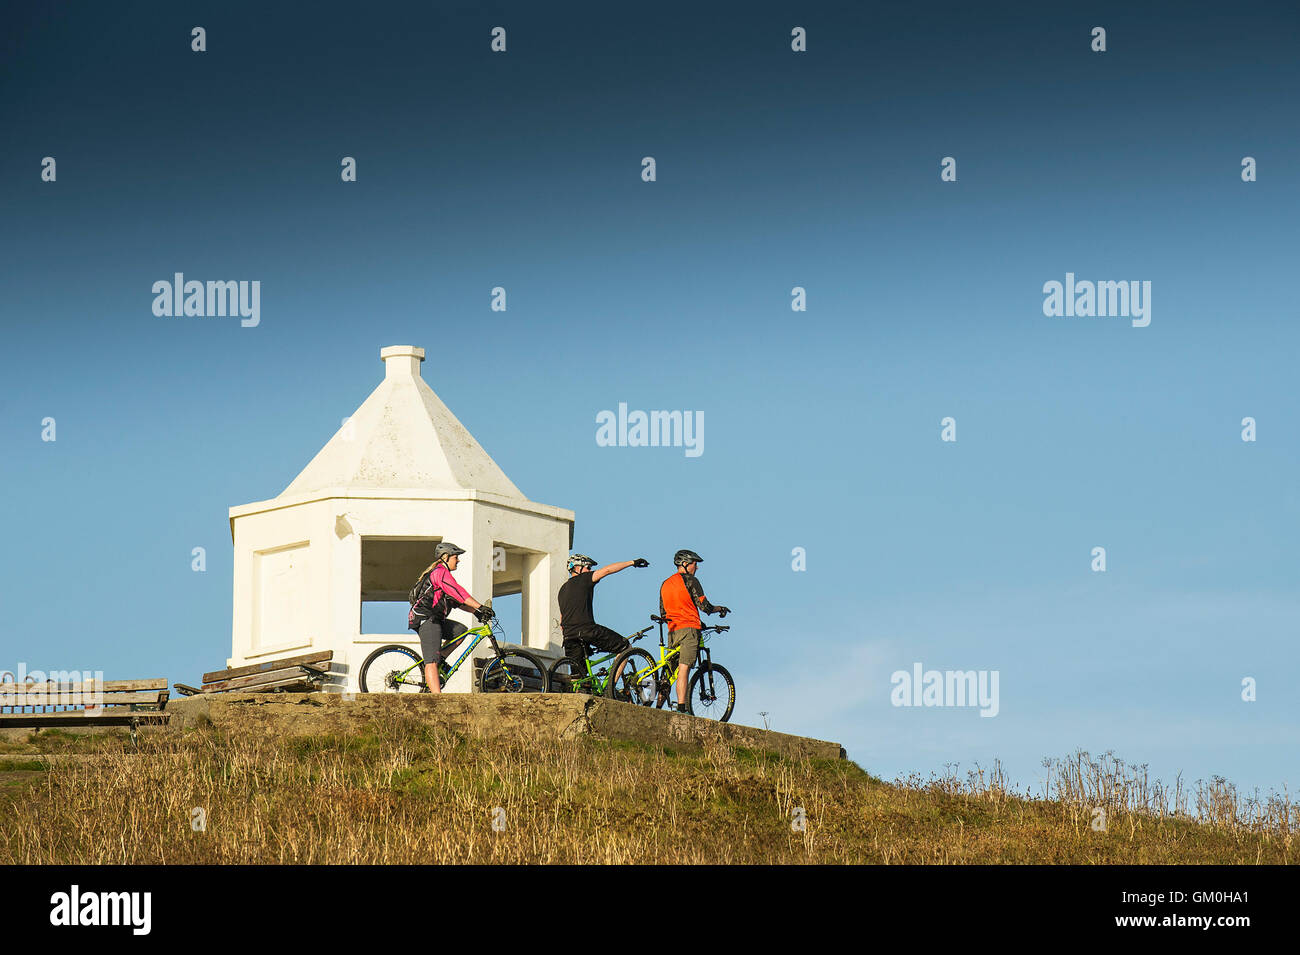 Drei Mountainbiker stehen neben der weißen Suche aufbauend auf Toip Towan Landzunge in Newquay, Cornwall. Stockfoto